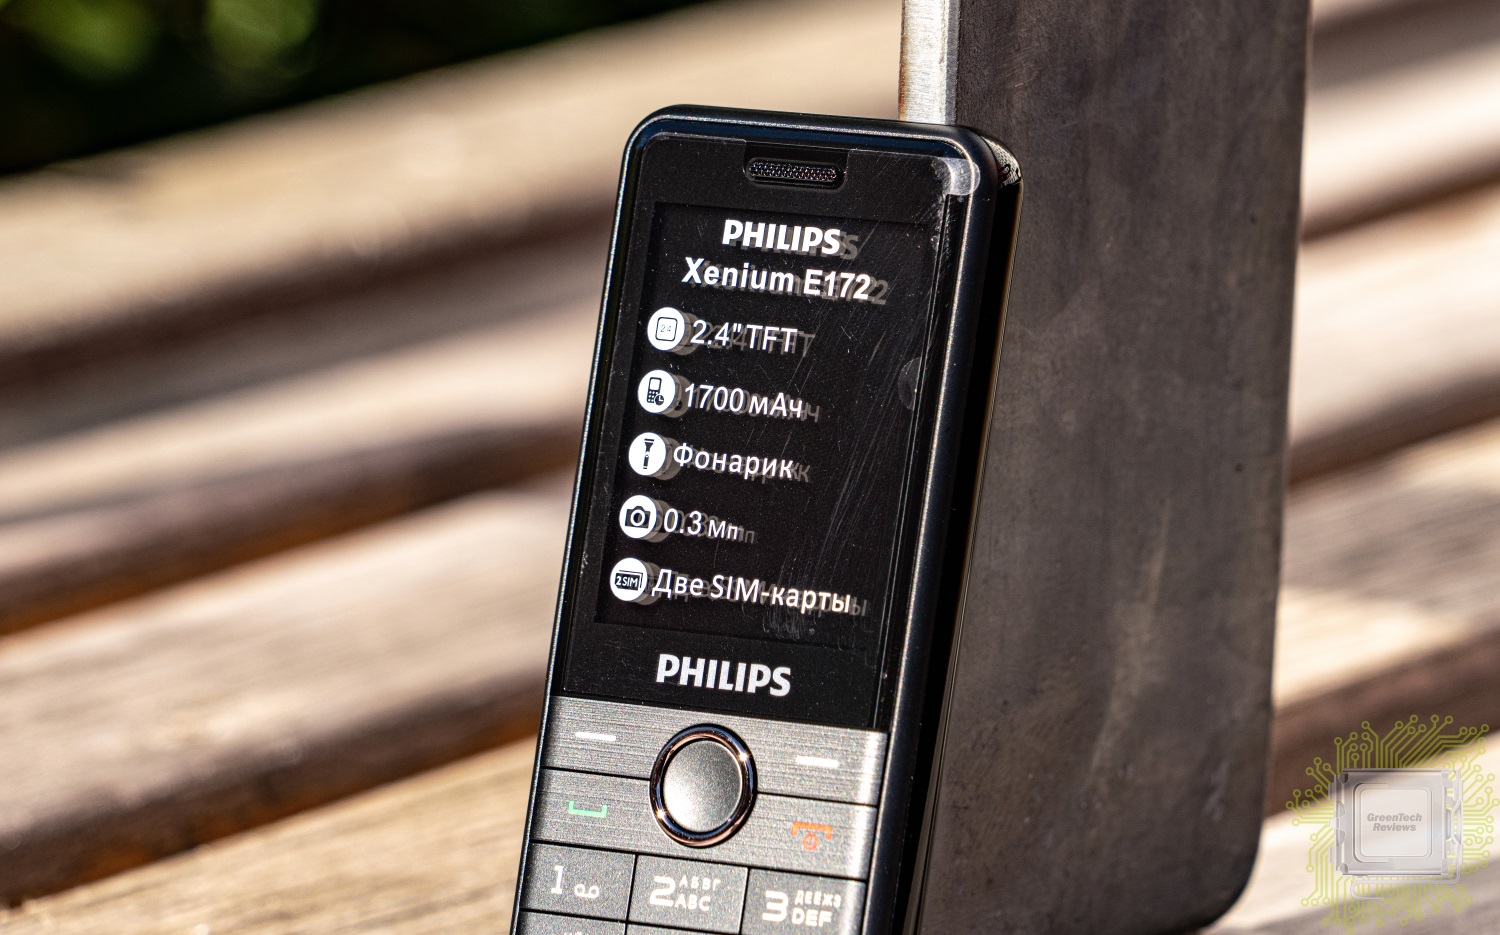 Филипс 172. Philips Xenium e172. Philips Xenium e172 черный. Philips Xenium e590. Philips Xenium 172.